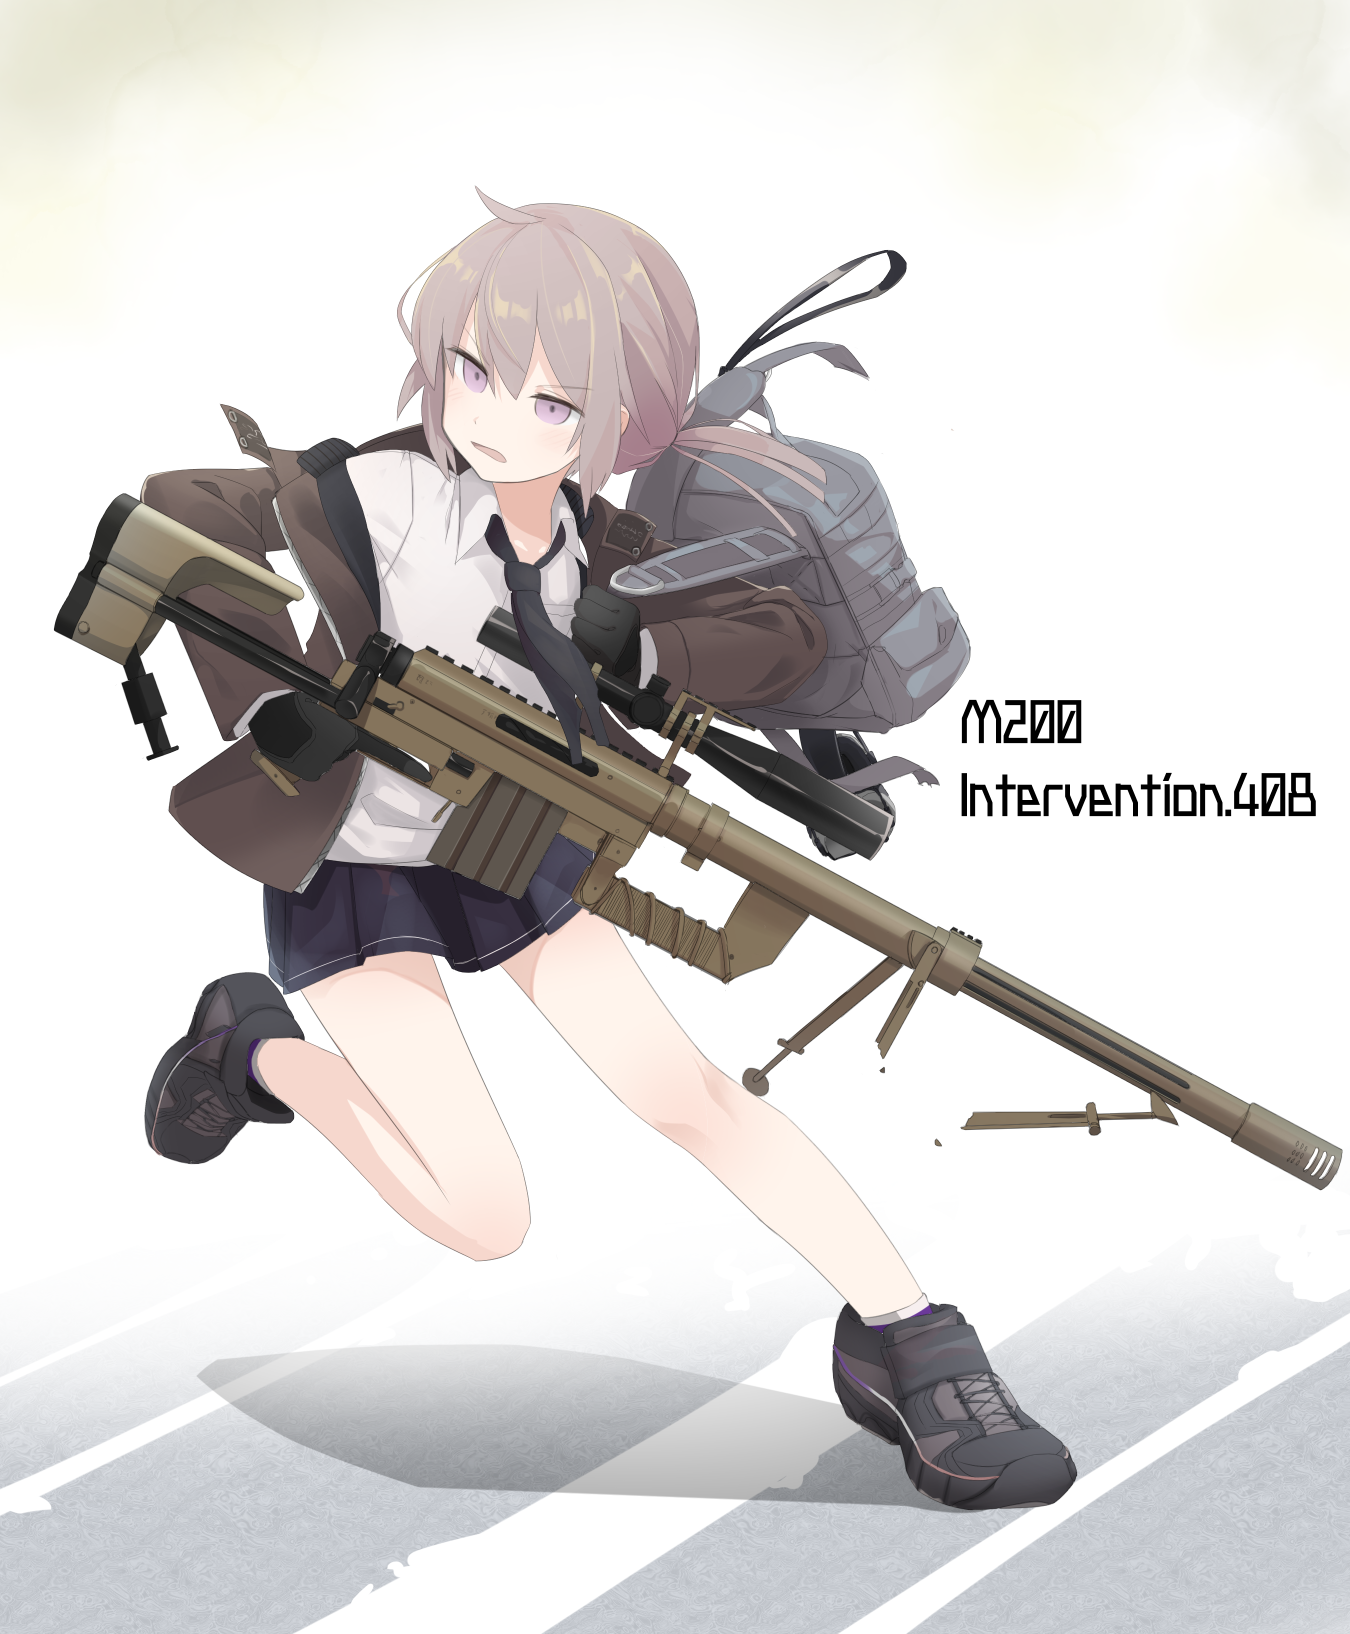 ｍ200-M200銃を持った戦術人形